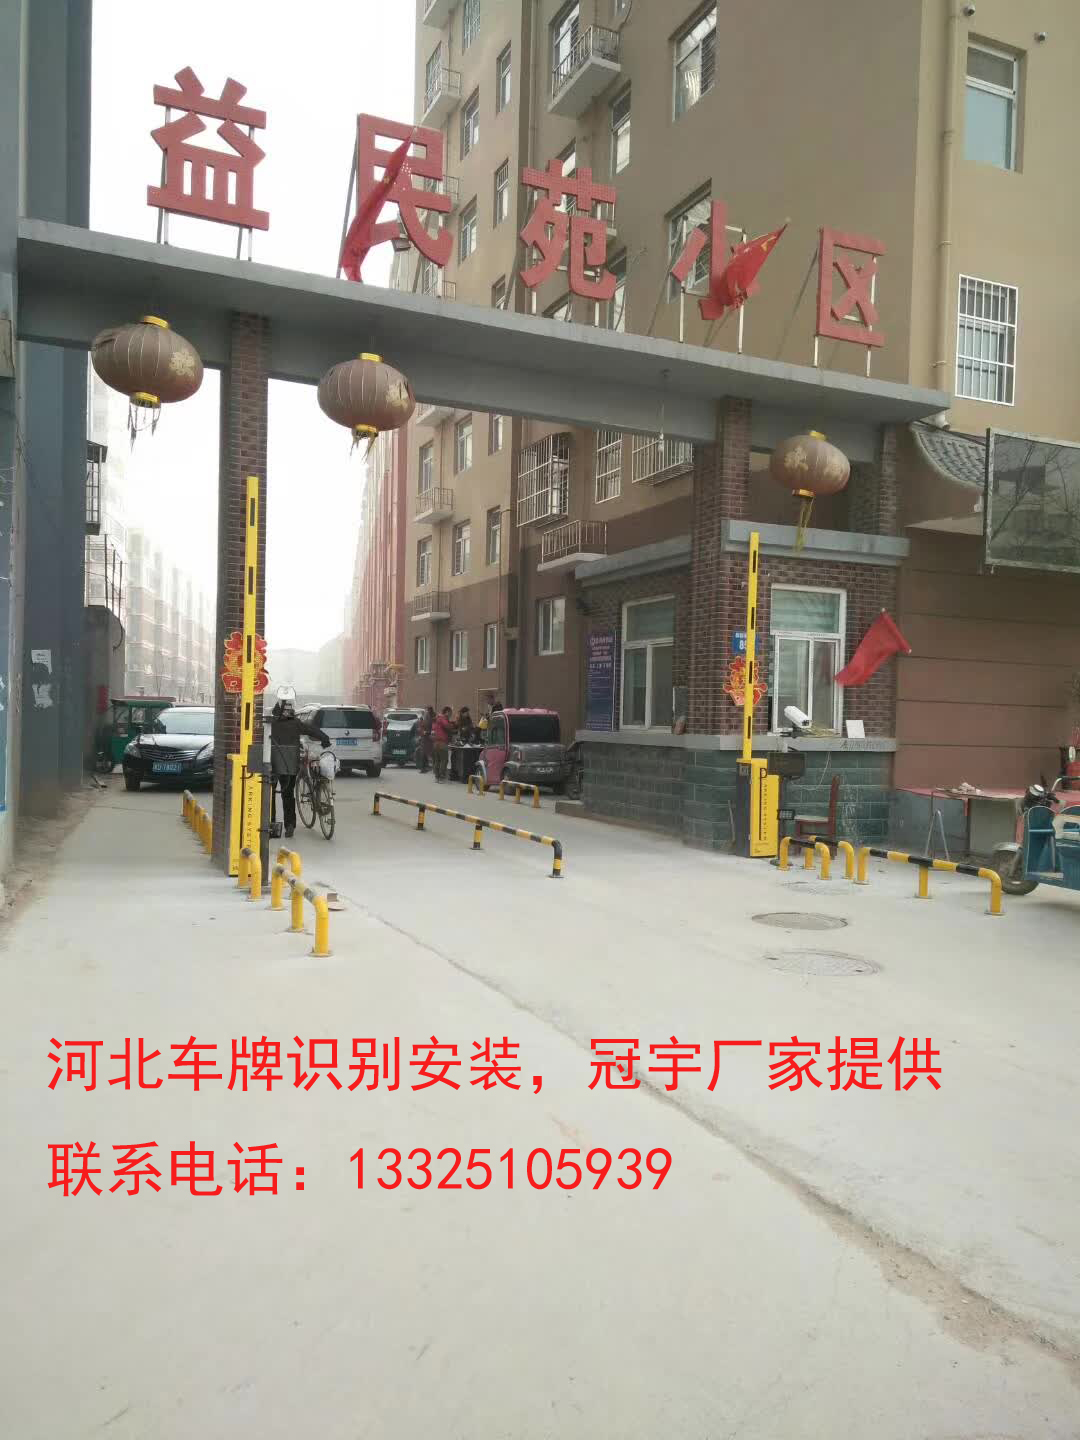 莱芜邯郸哪有卖道闸车牌识别？